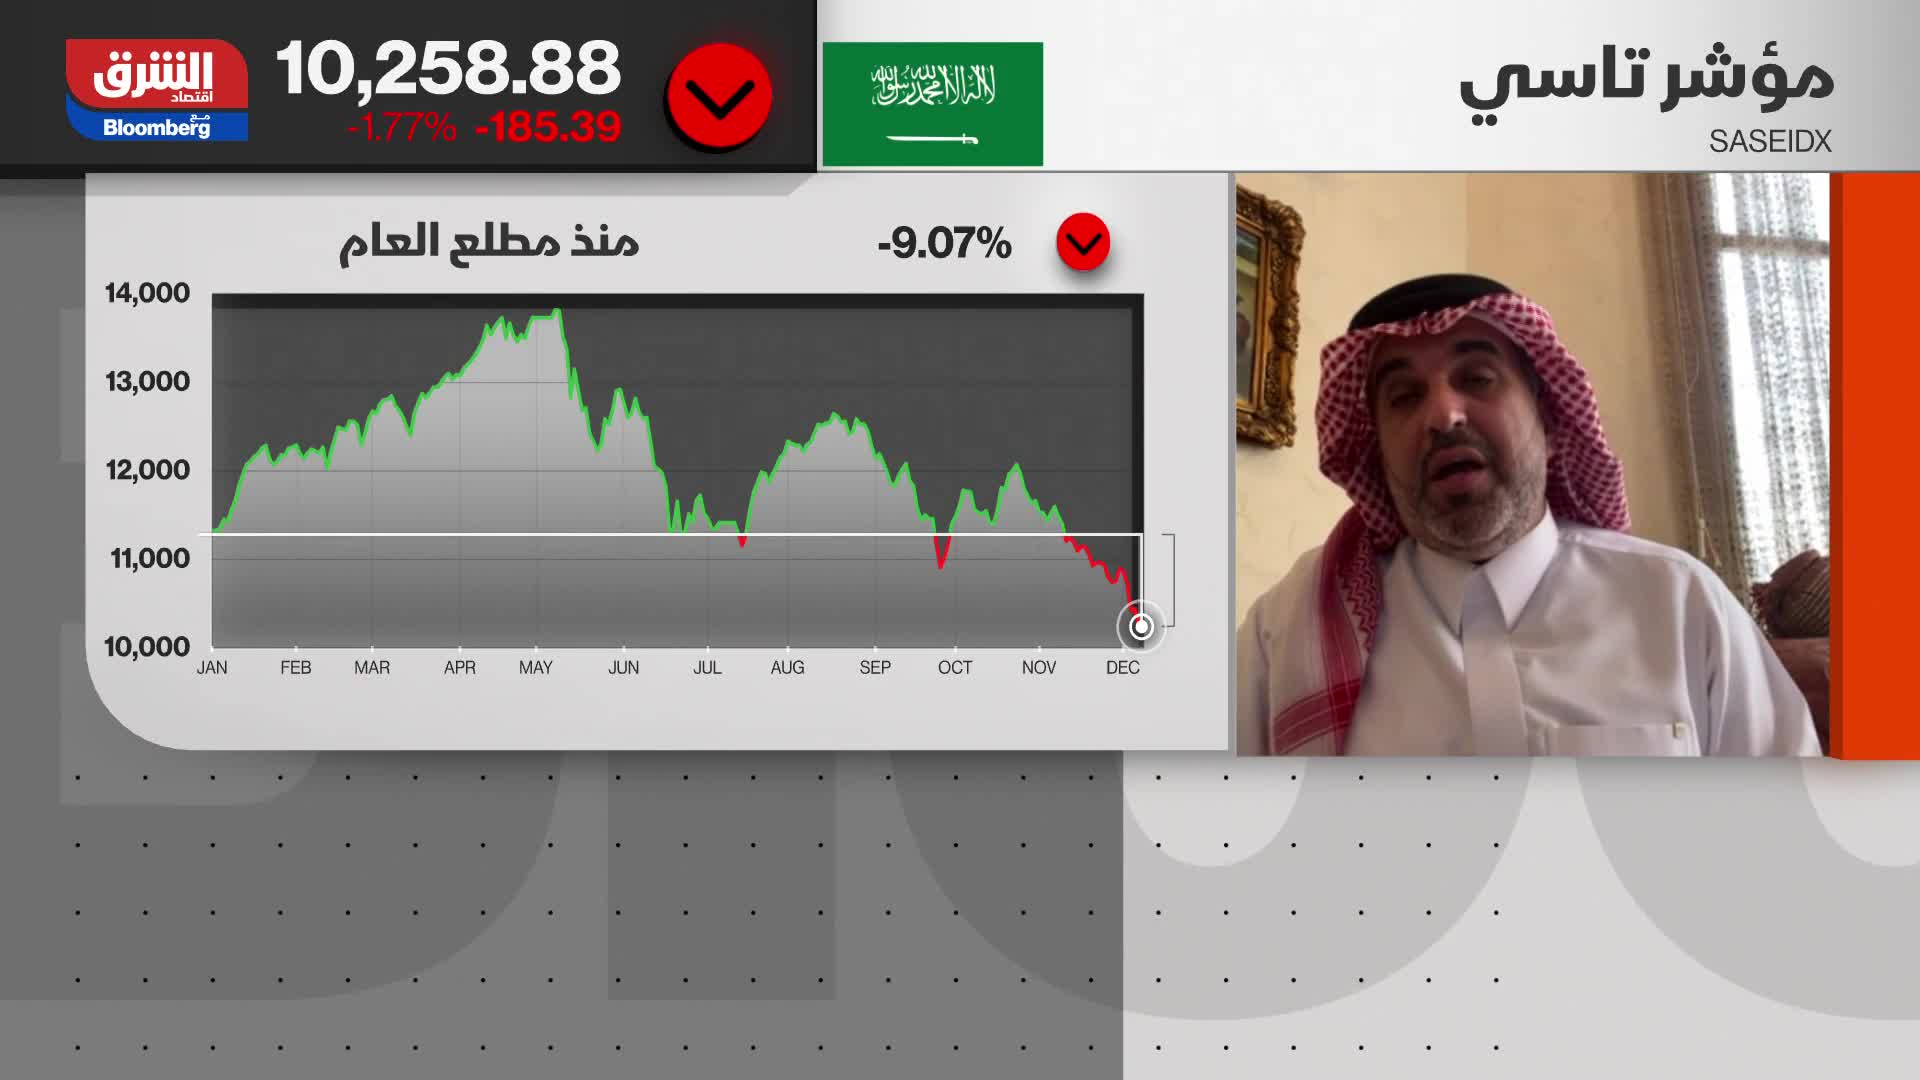 القاسم: السوق السعودي يعيش مرحلة هبوط مستمر وهو أمر يقلق المتداولين